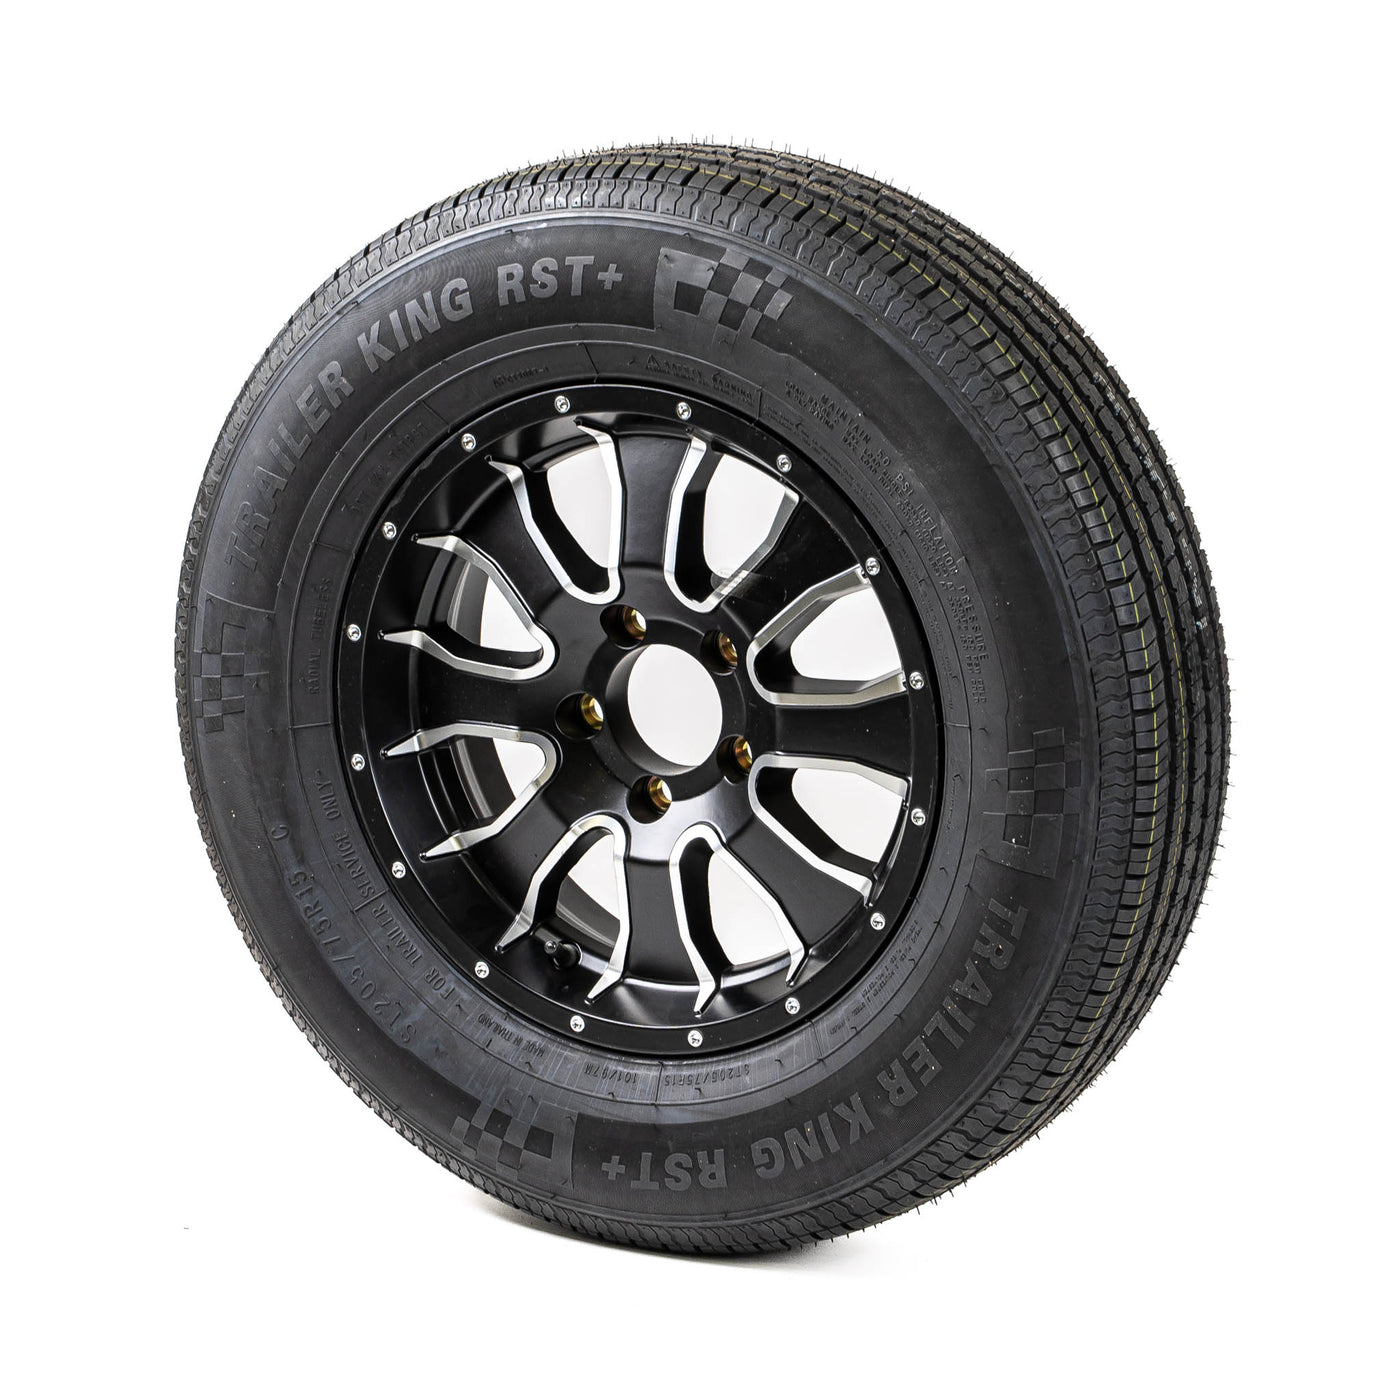 15″ Aluminum Rim and Radial Tire